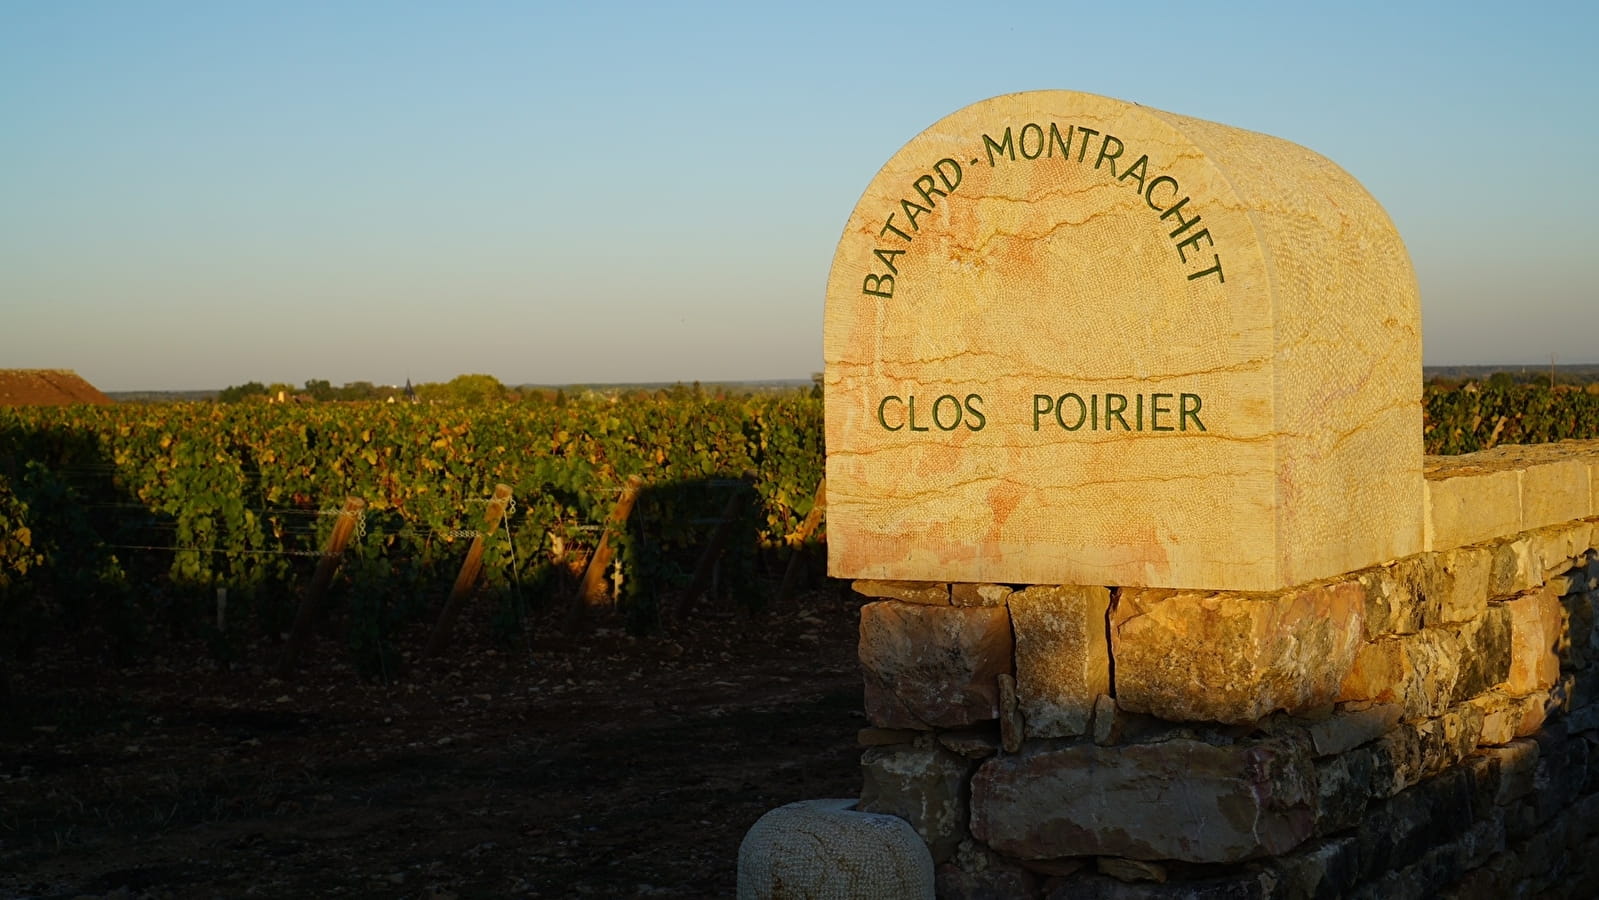 Le Clos Poirier: geohistorie van een wijngaard in het hart van Bâtard-Montrachet